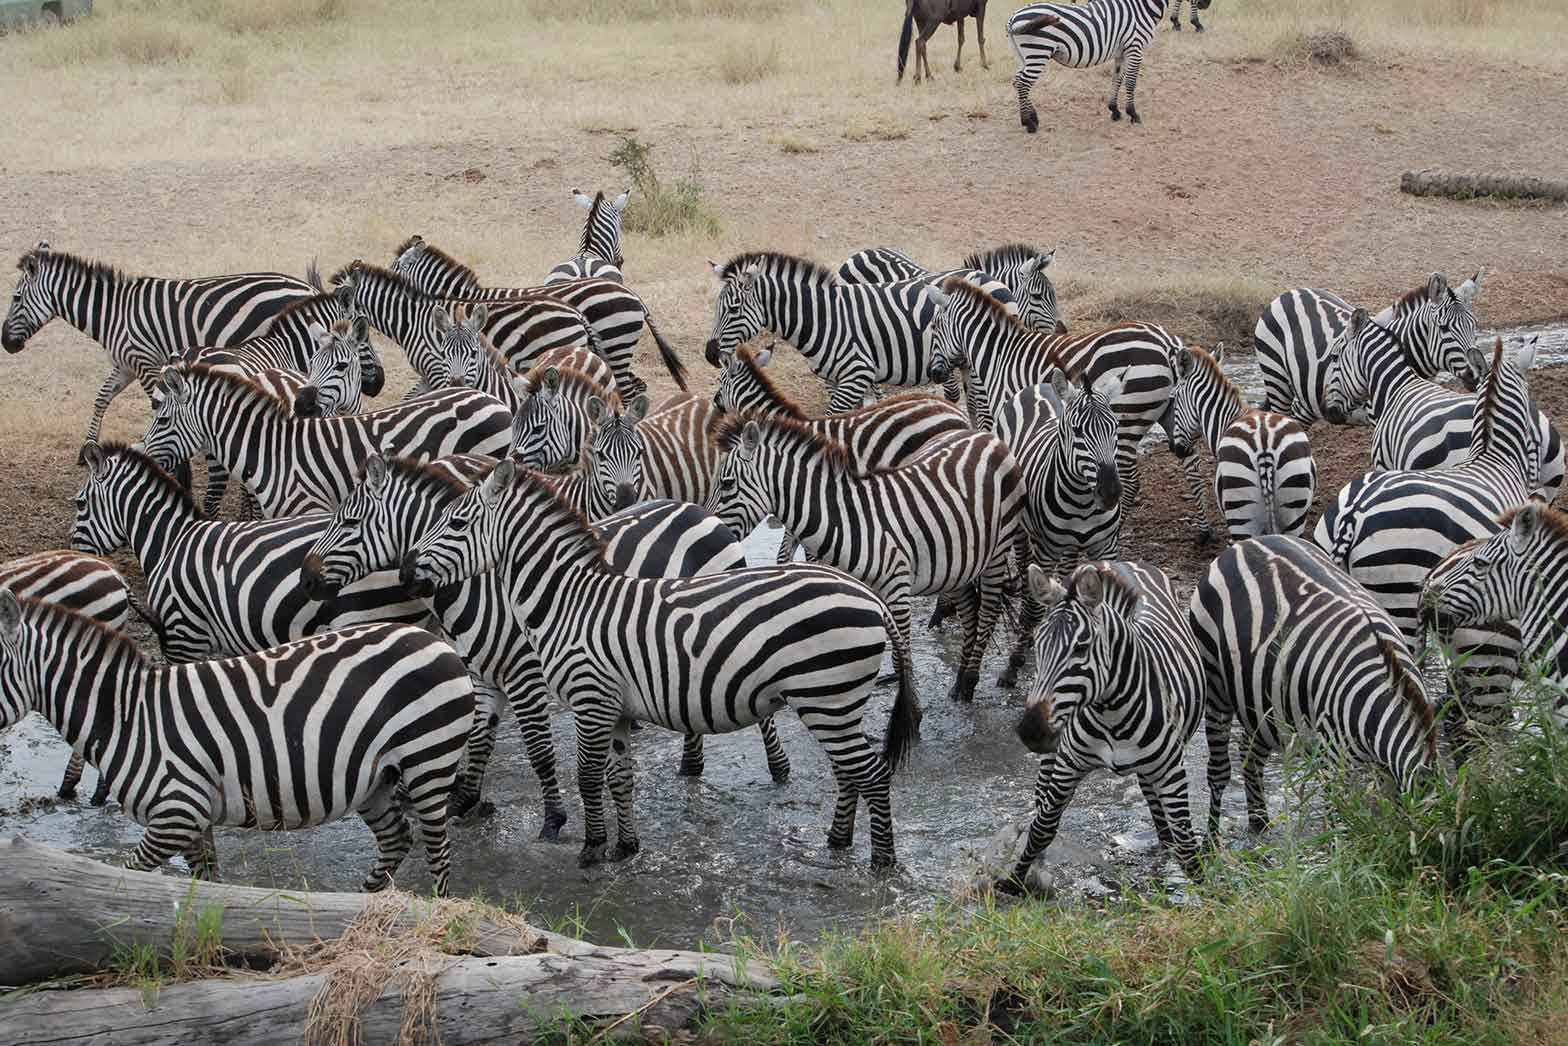 Zebra Watering Hold - The Serengeti